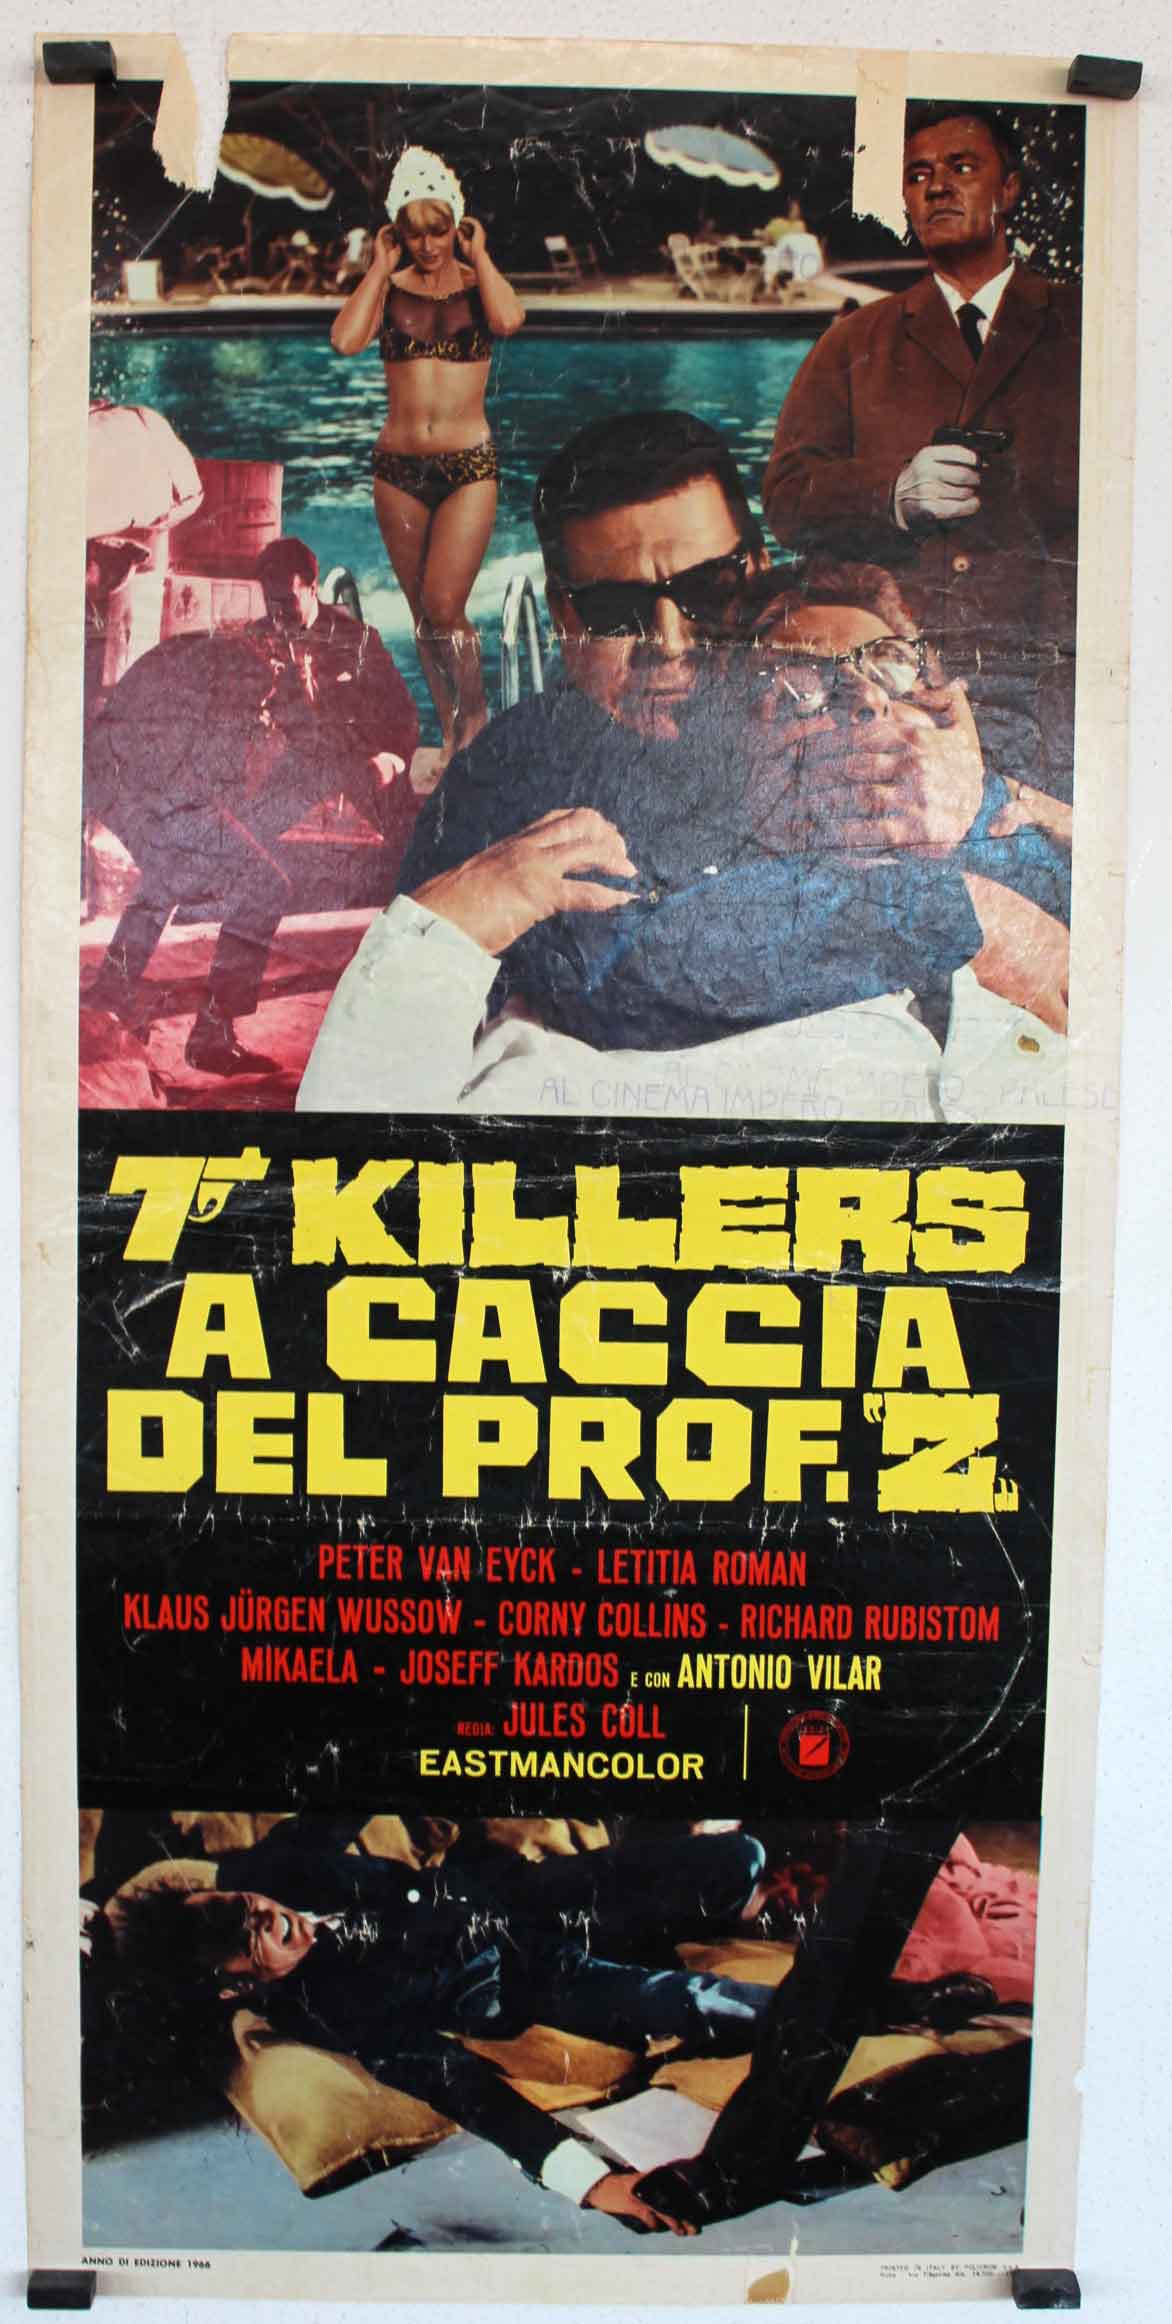 7 KILLERS A CACCIA DEL PROF. Z